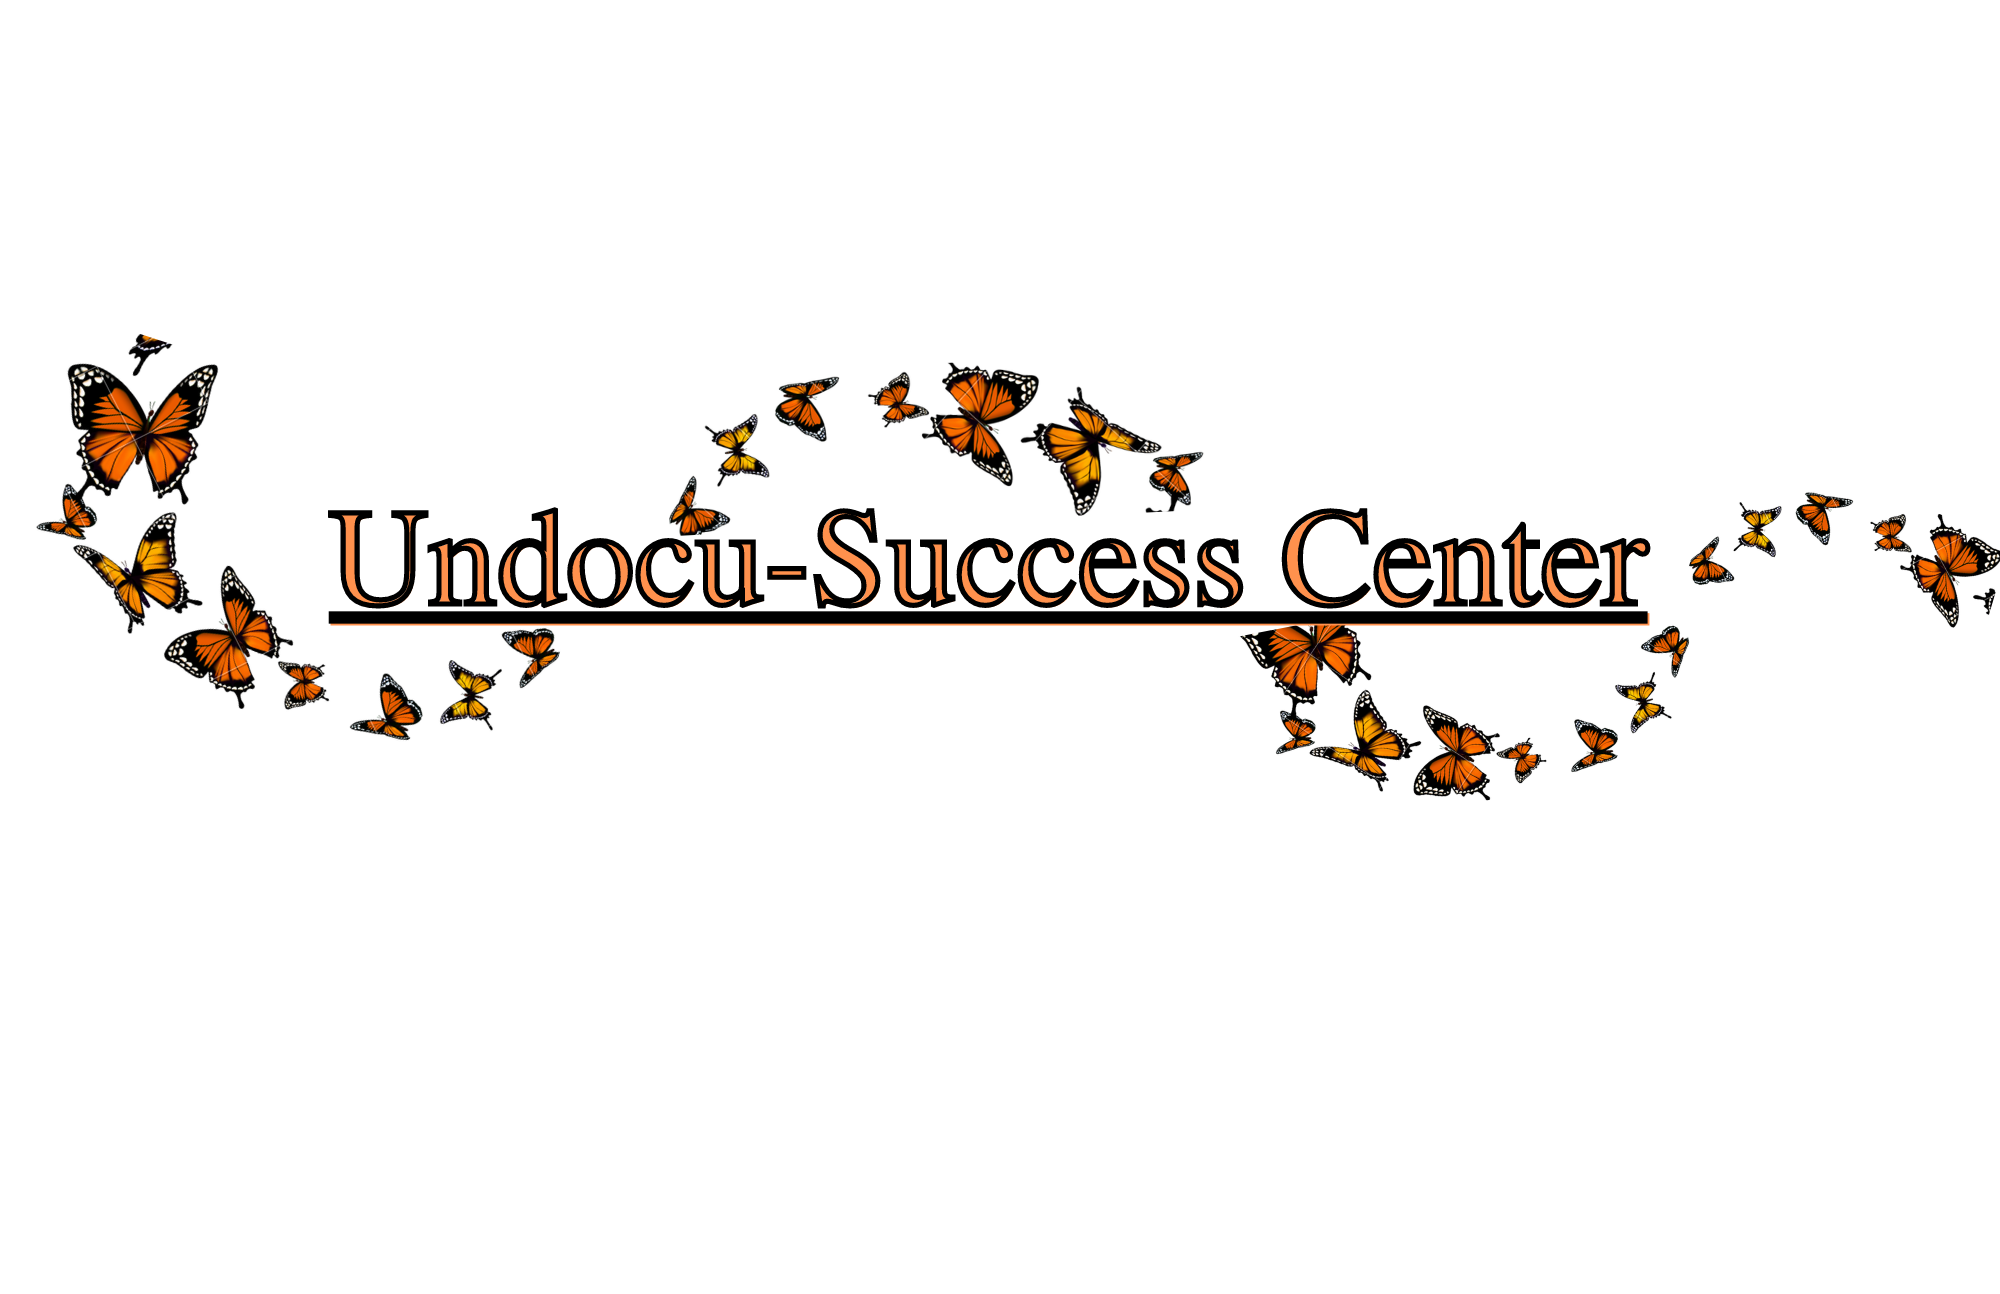 Undocu-Success Center